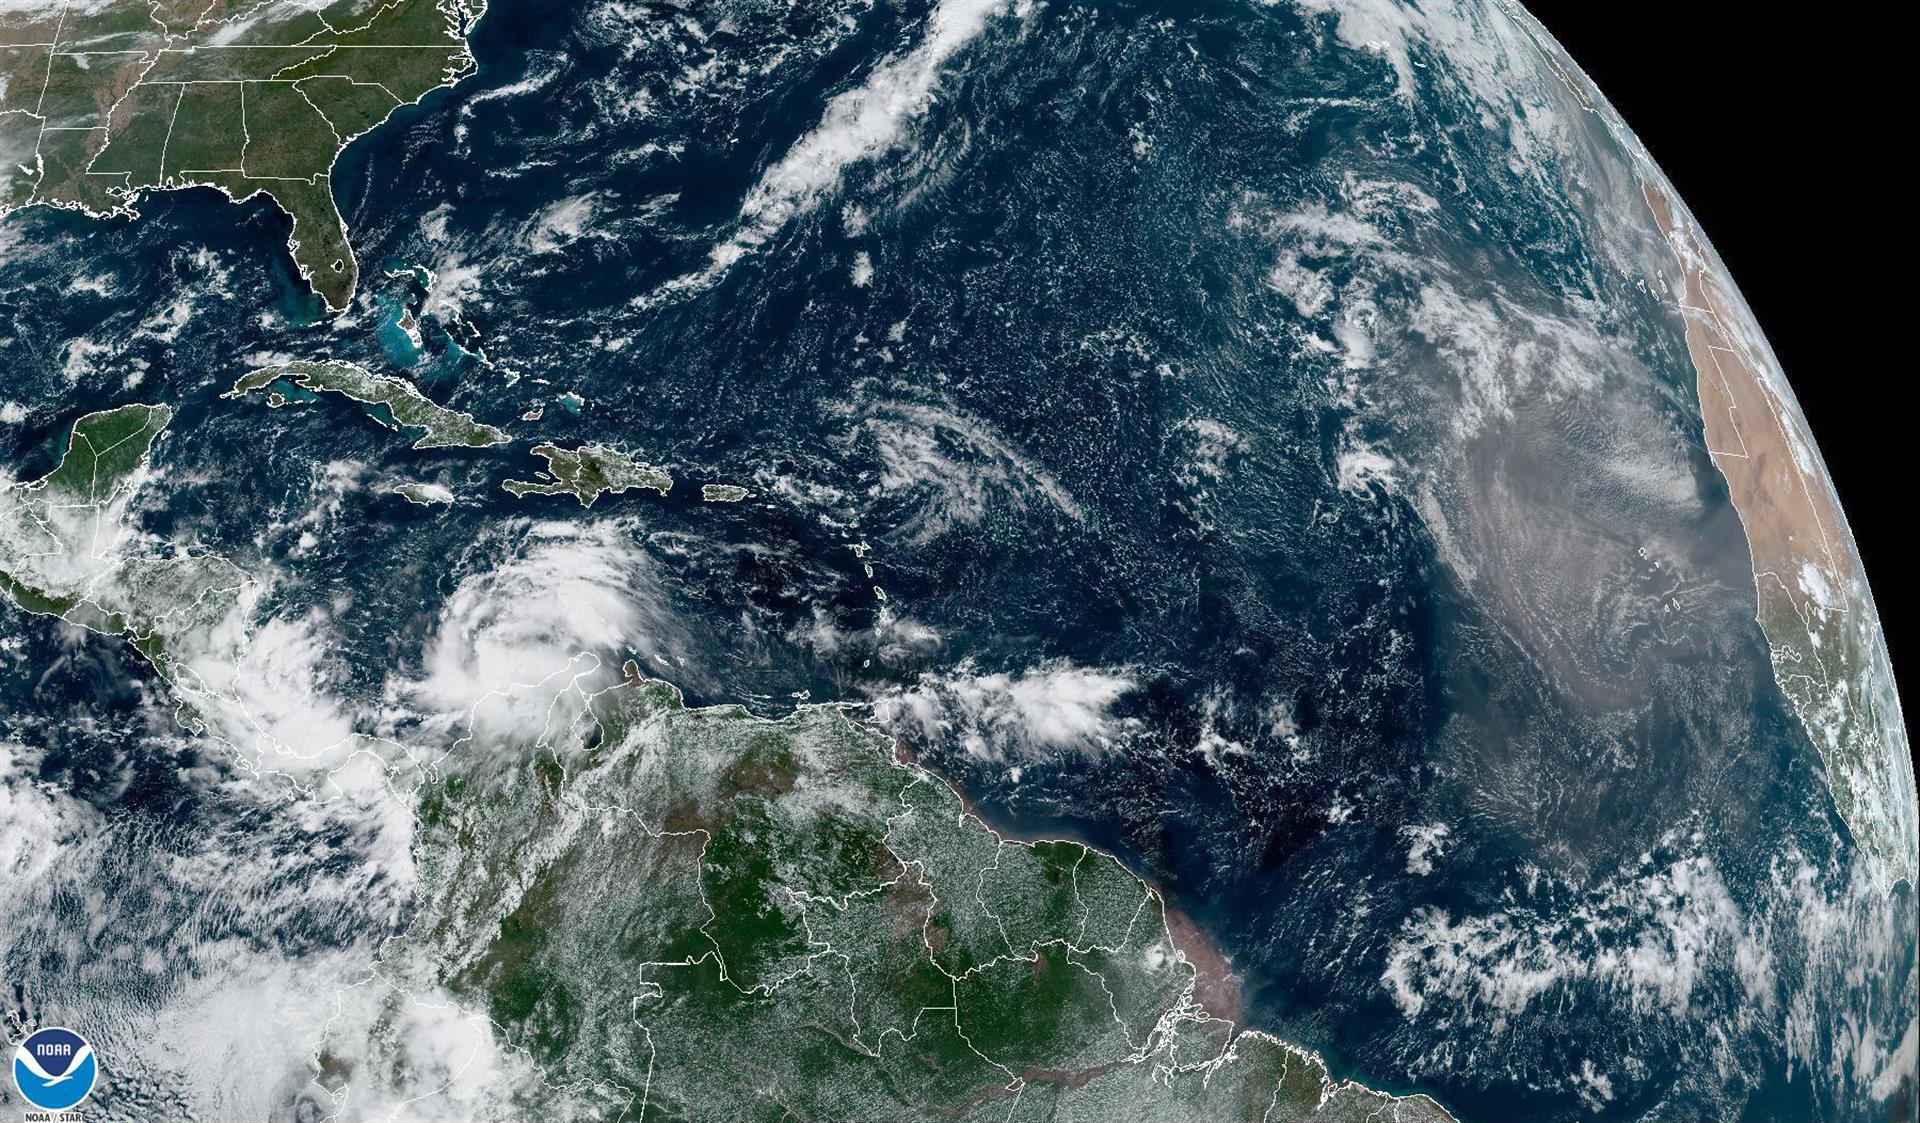 Imagen satelital cedida hoy viernes por la Oficina Nacional de Administración Oceánica y Atmosférica de Estados Unidos (NOAA) a través del Centro Nacional de Huracanes (NHC), en la que se muestra el estado del clima en el Atlántico. EFE/NOAA-NHC /SOLO USO EDITORIAL /NO VENTAS /SOLO DISPONIBLE PARA ILUSTRAR LA NOTICIA QUE ACOMPAÑA /CRÉDITO OBLIGATORIO
